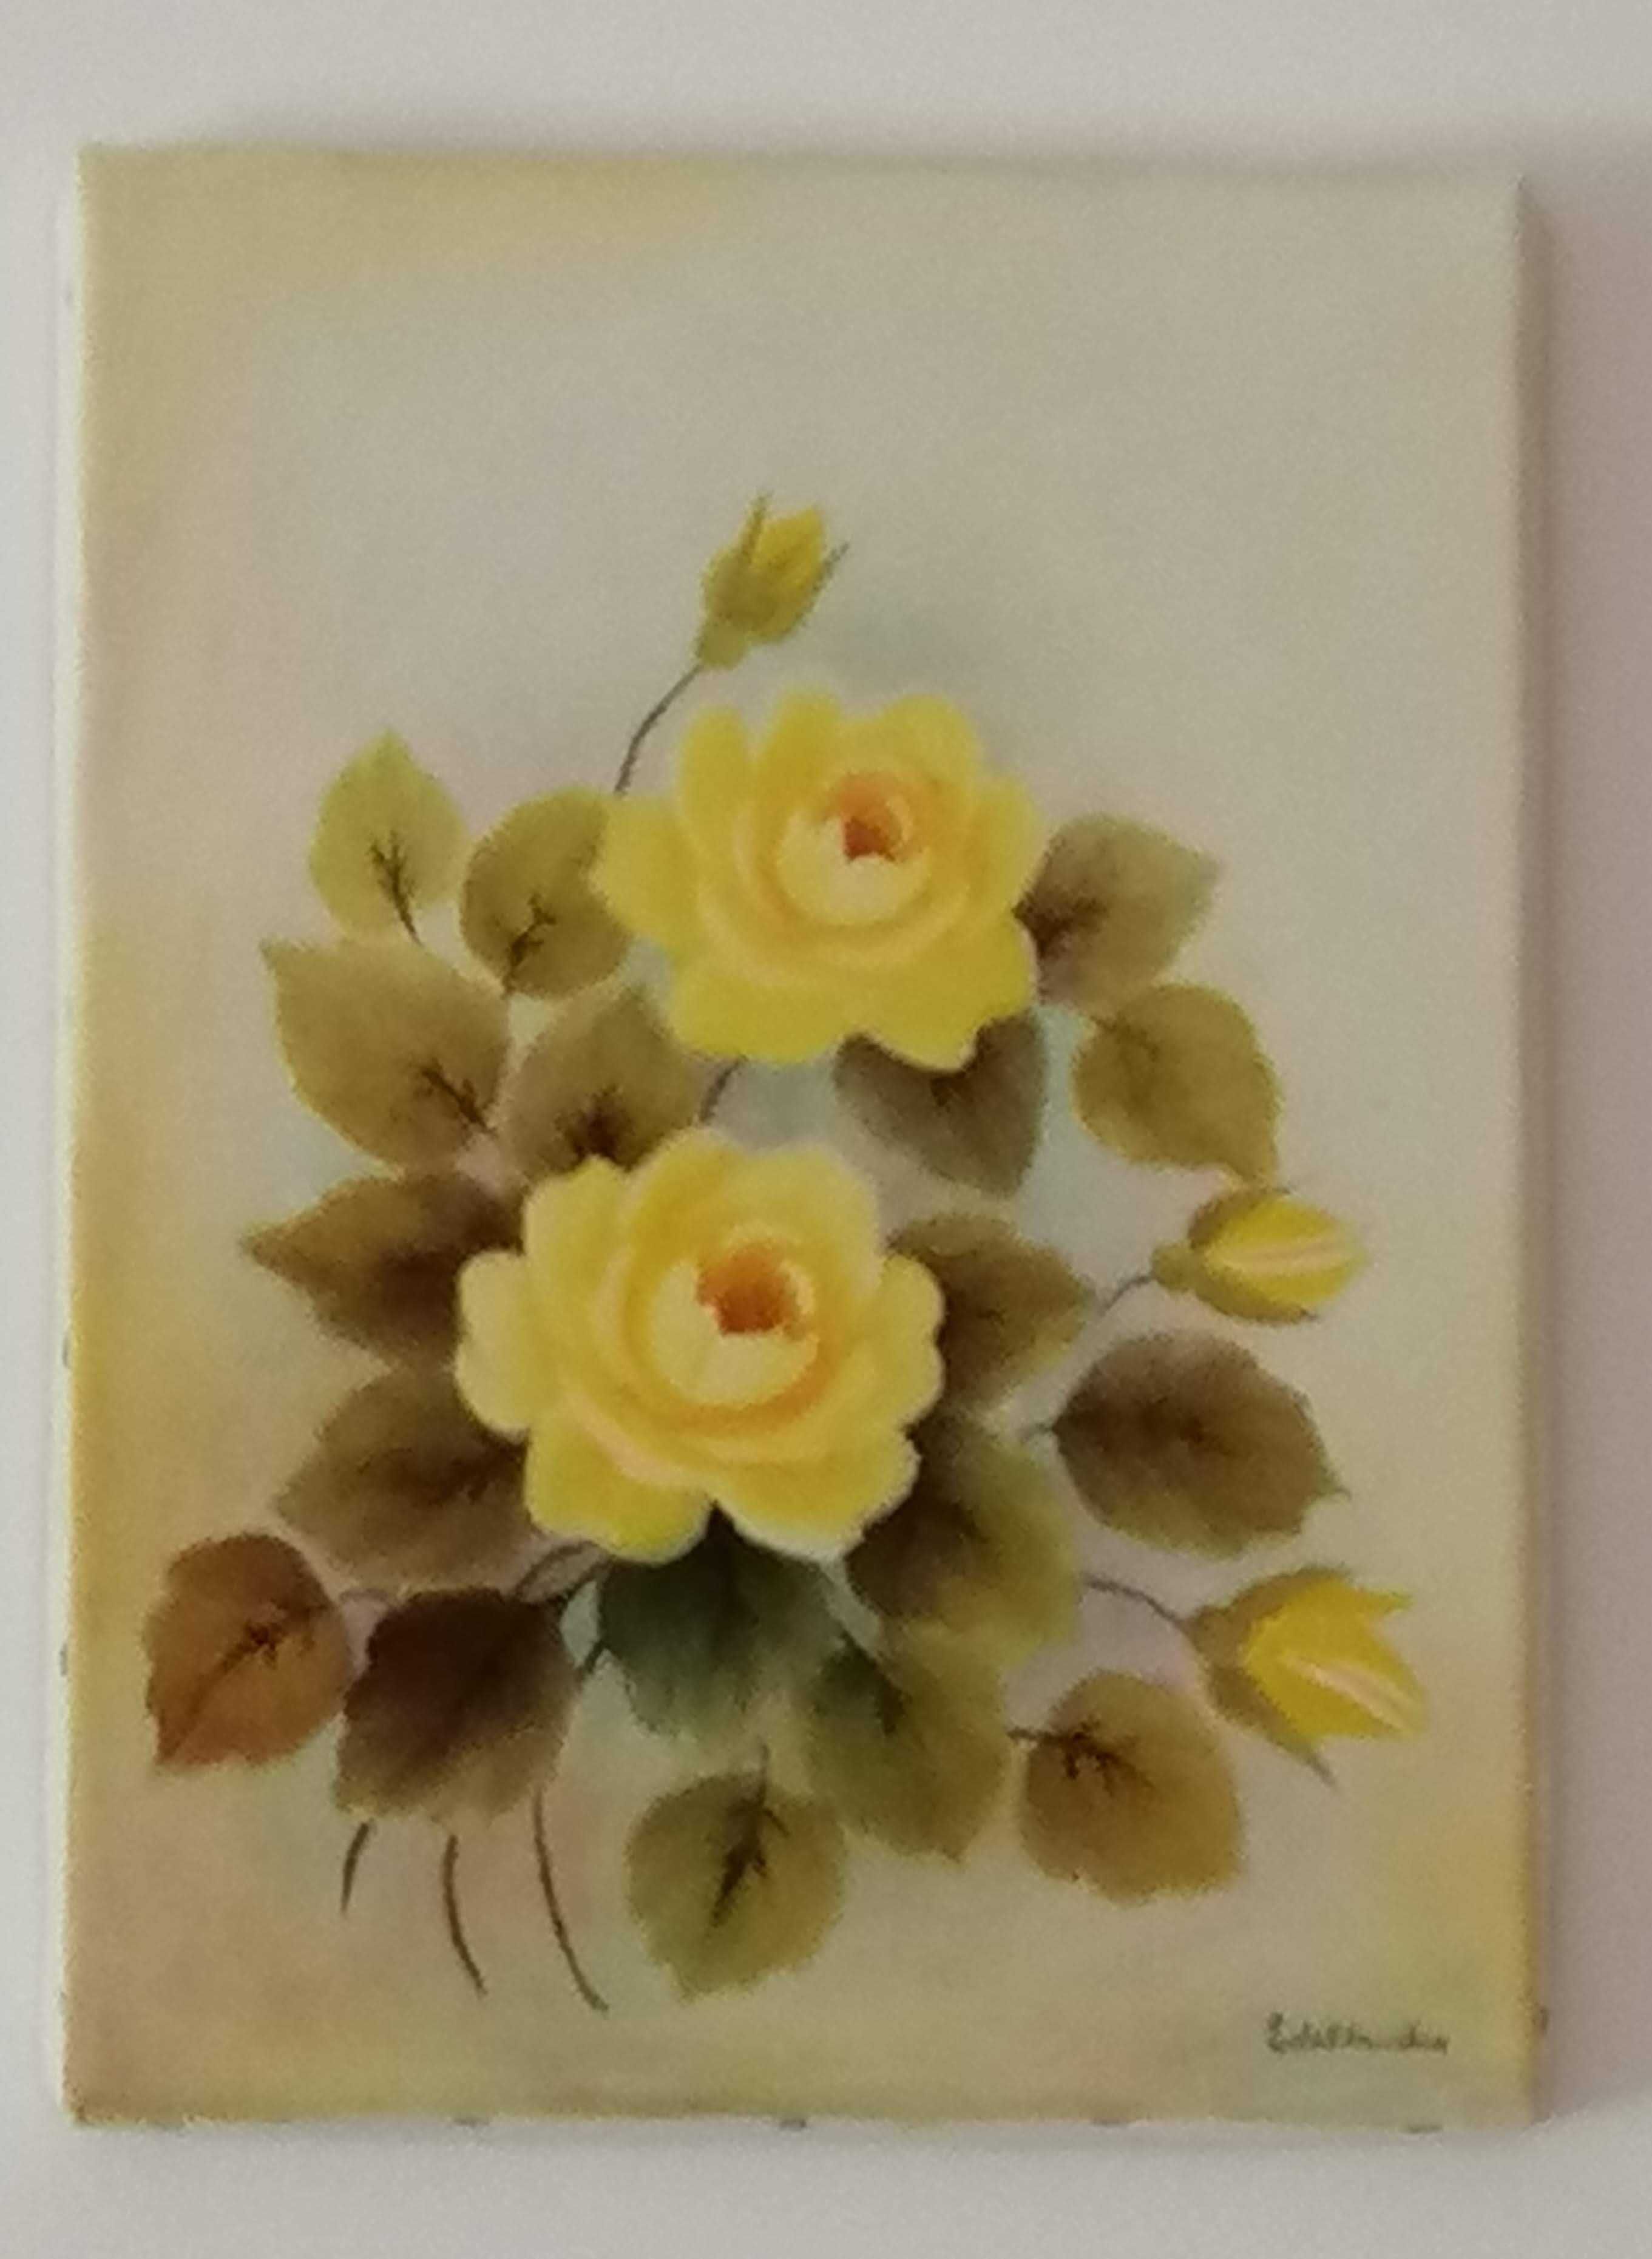 2 Quadros - Pinturas a óleo  s/ tela - rosas amarelas e jarros brancos